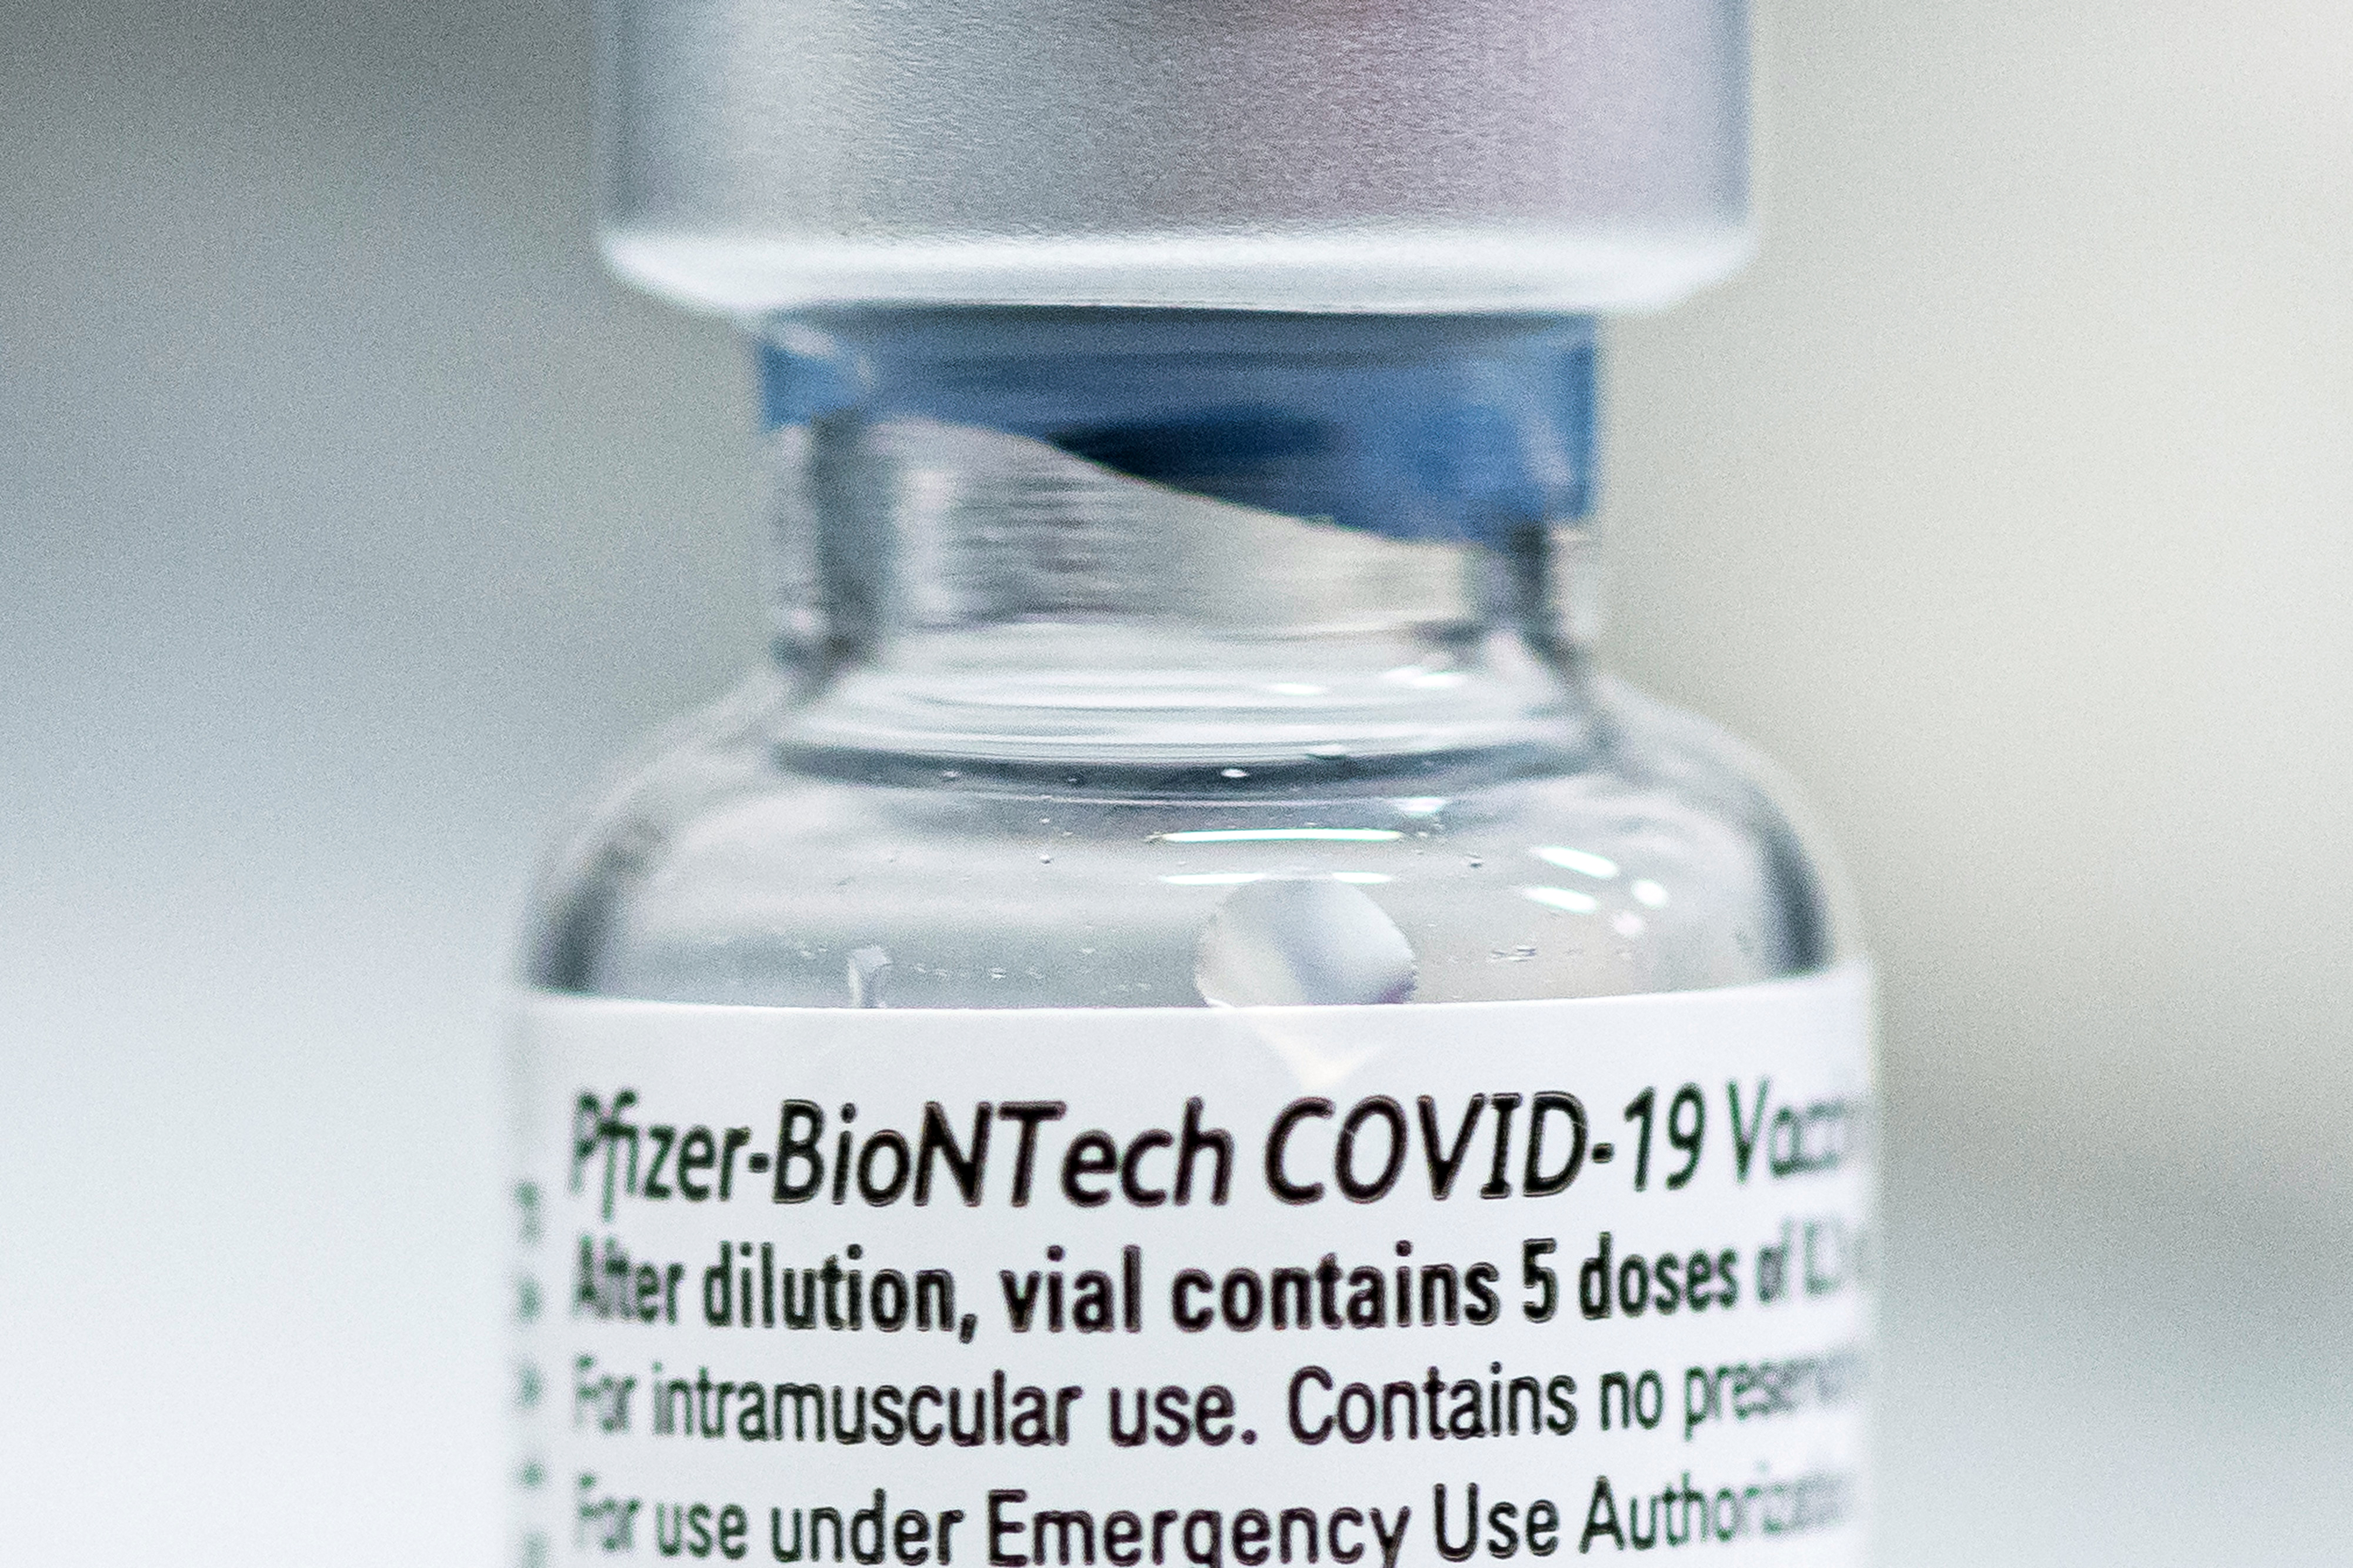 Symbolbild: eine Ampulle mit Covid-19-Impfstoff der Firmen Biontech und Pfizer